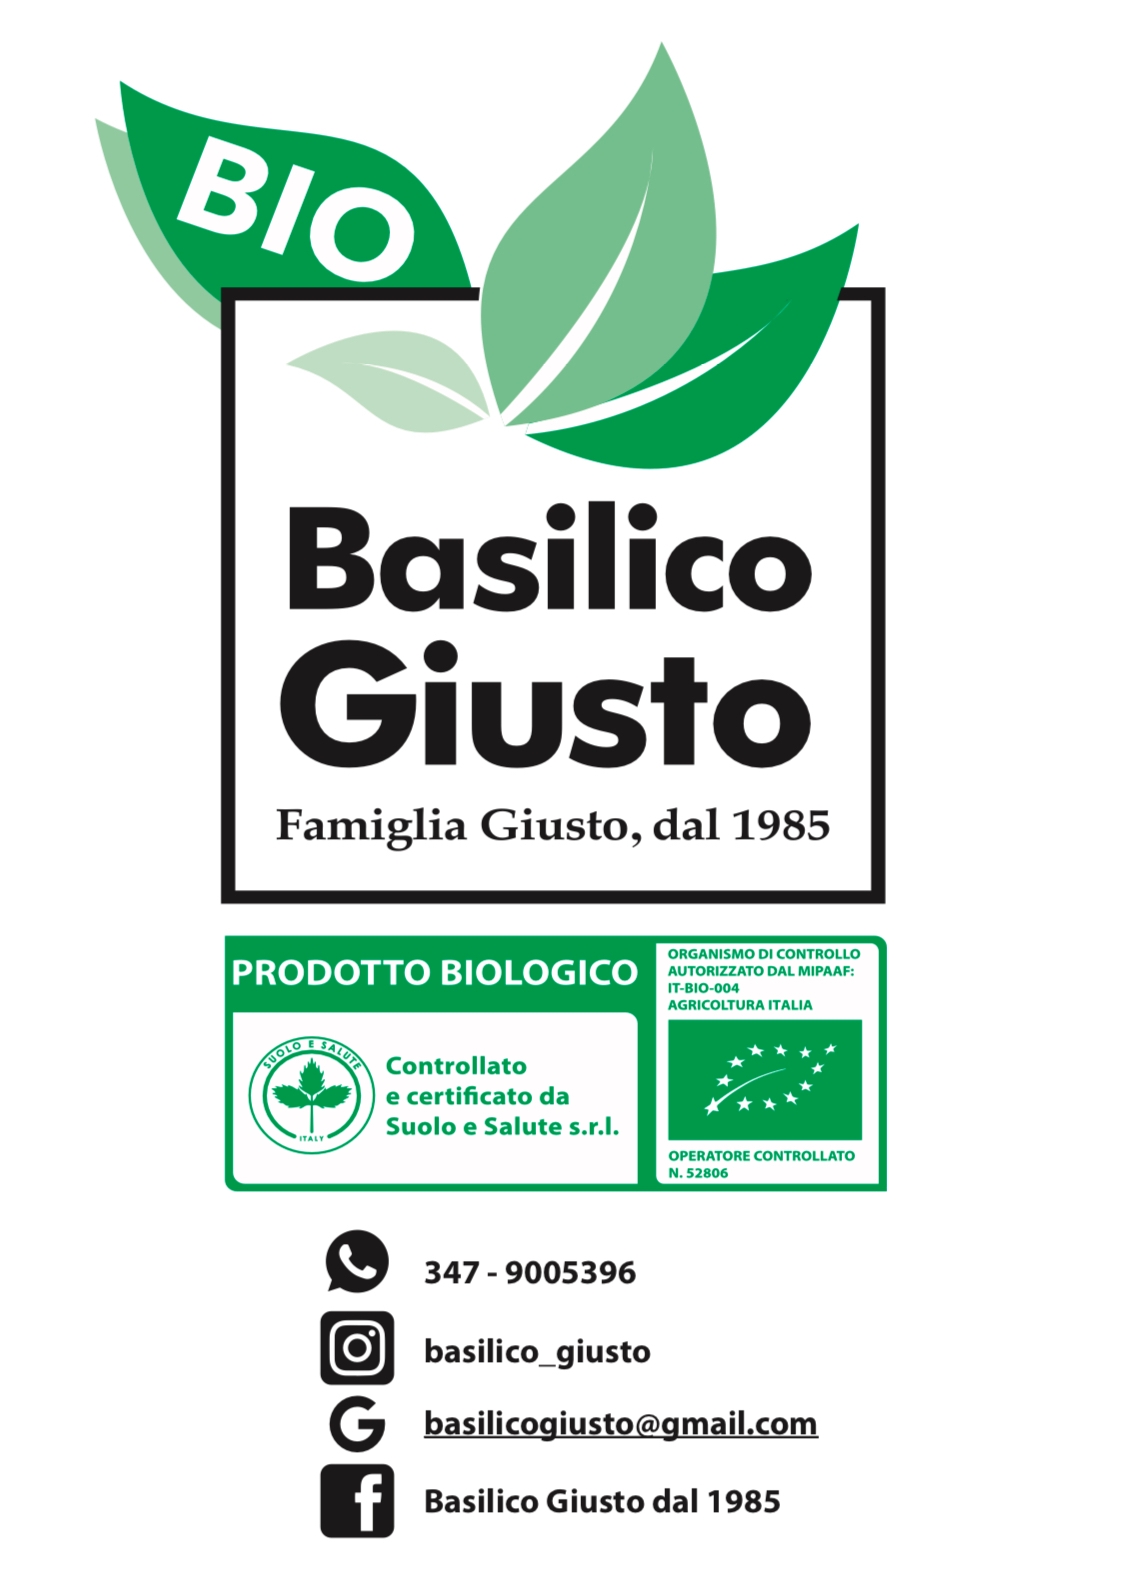 Sponsor Basilico Giusto